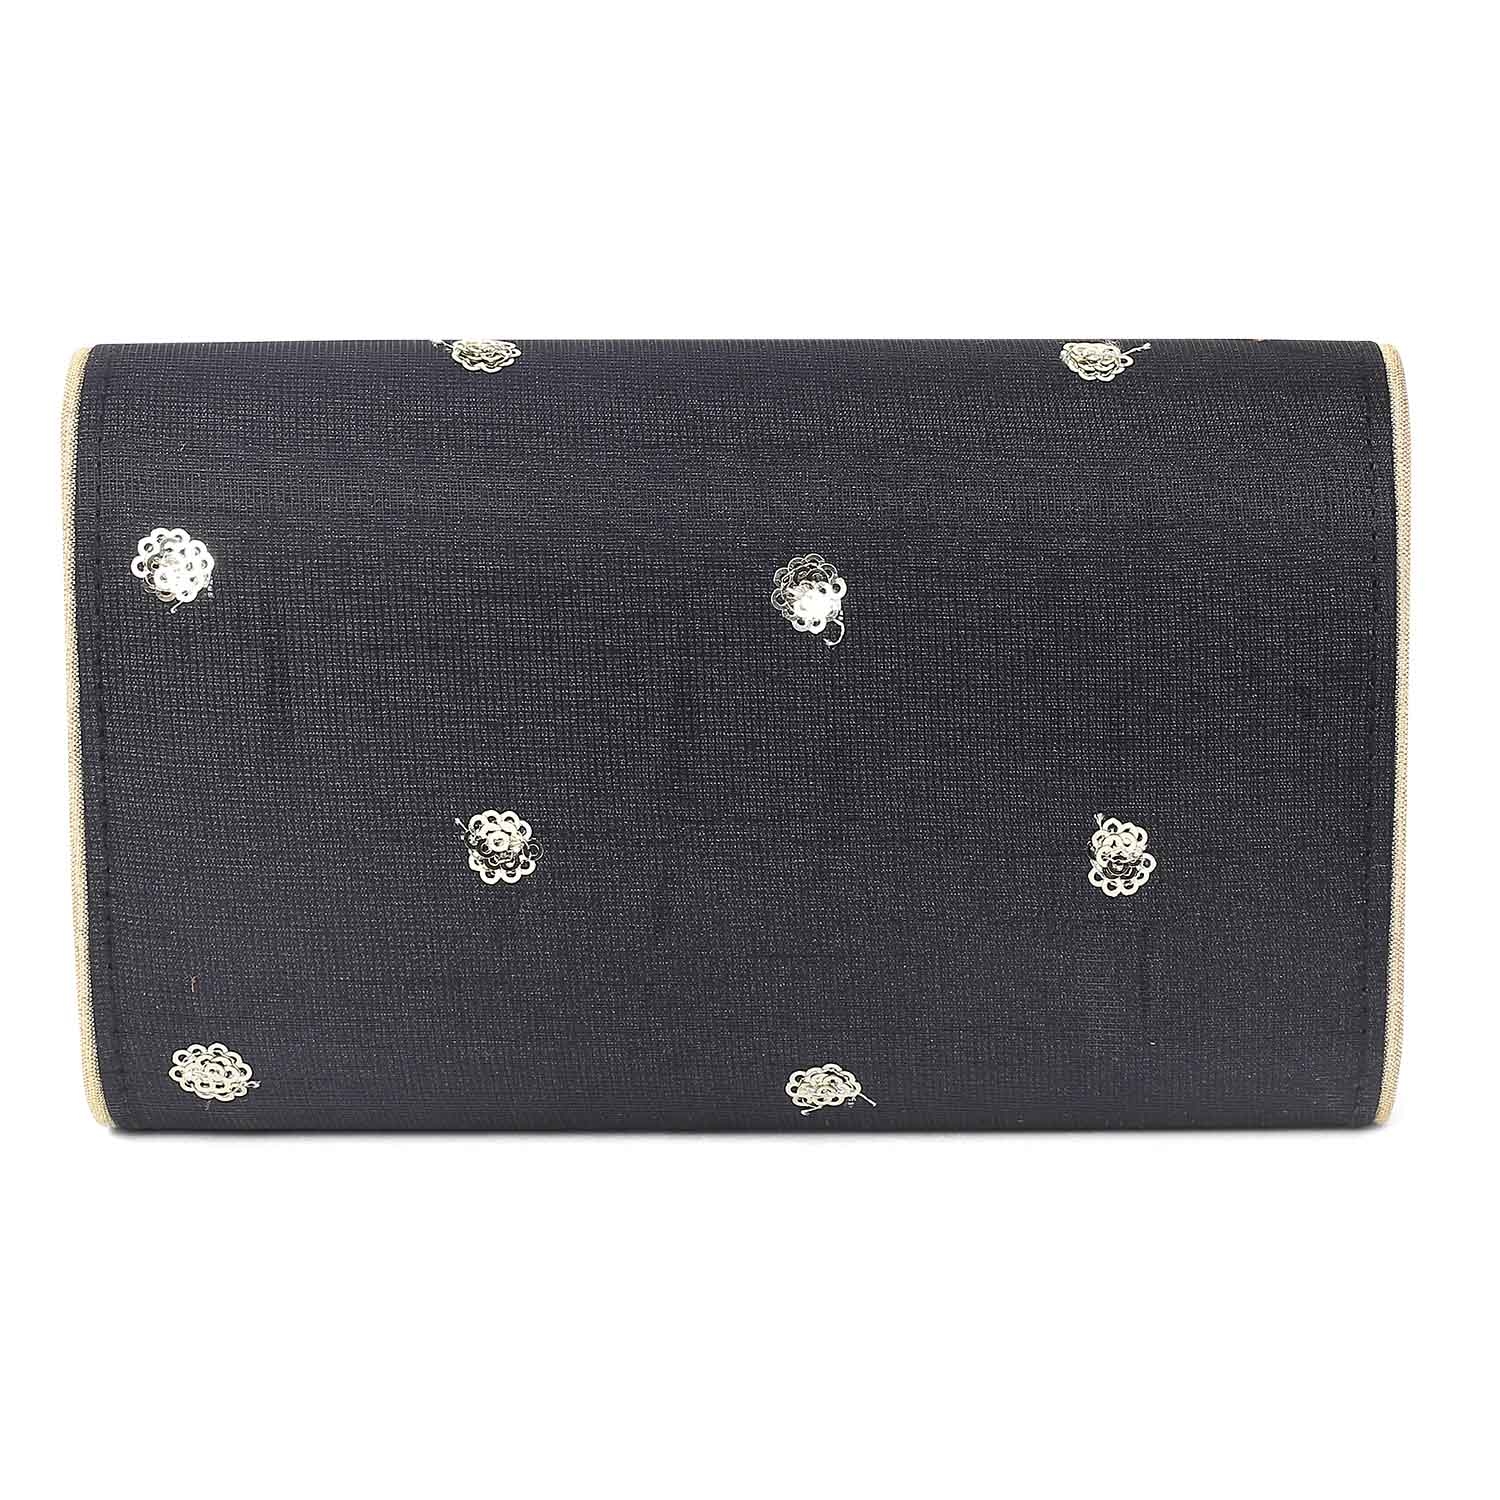 Basic black envelope clutch